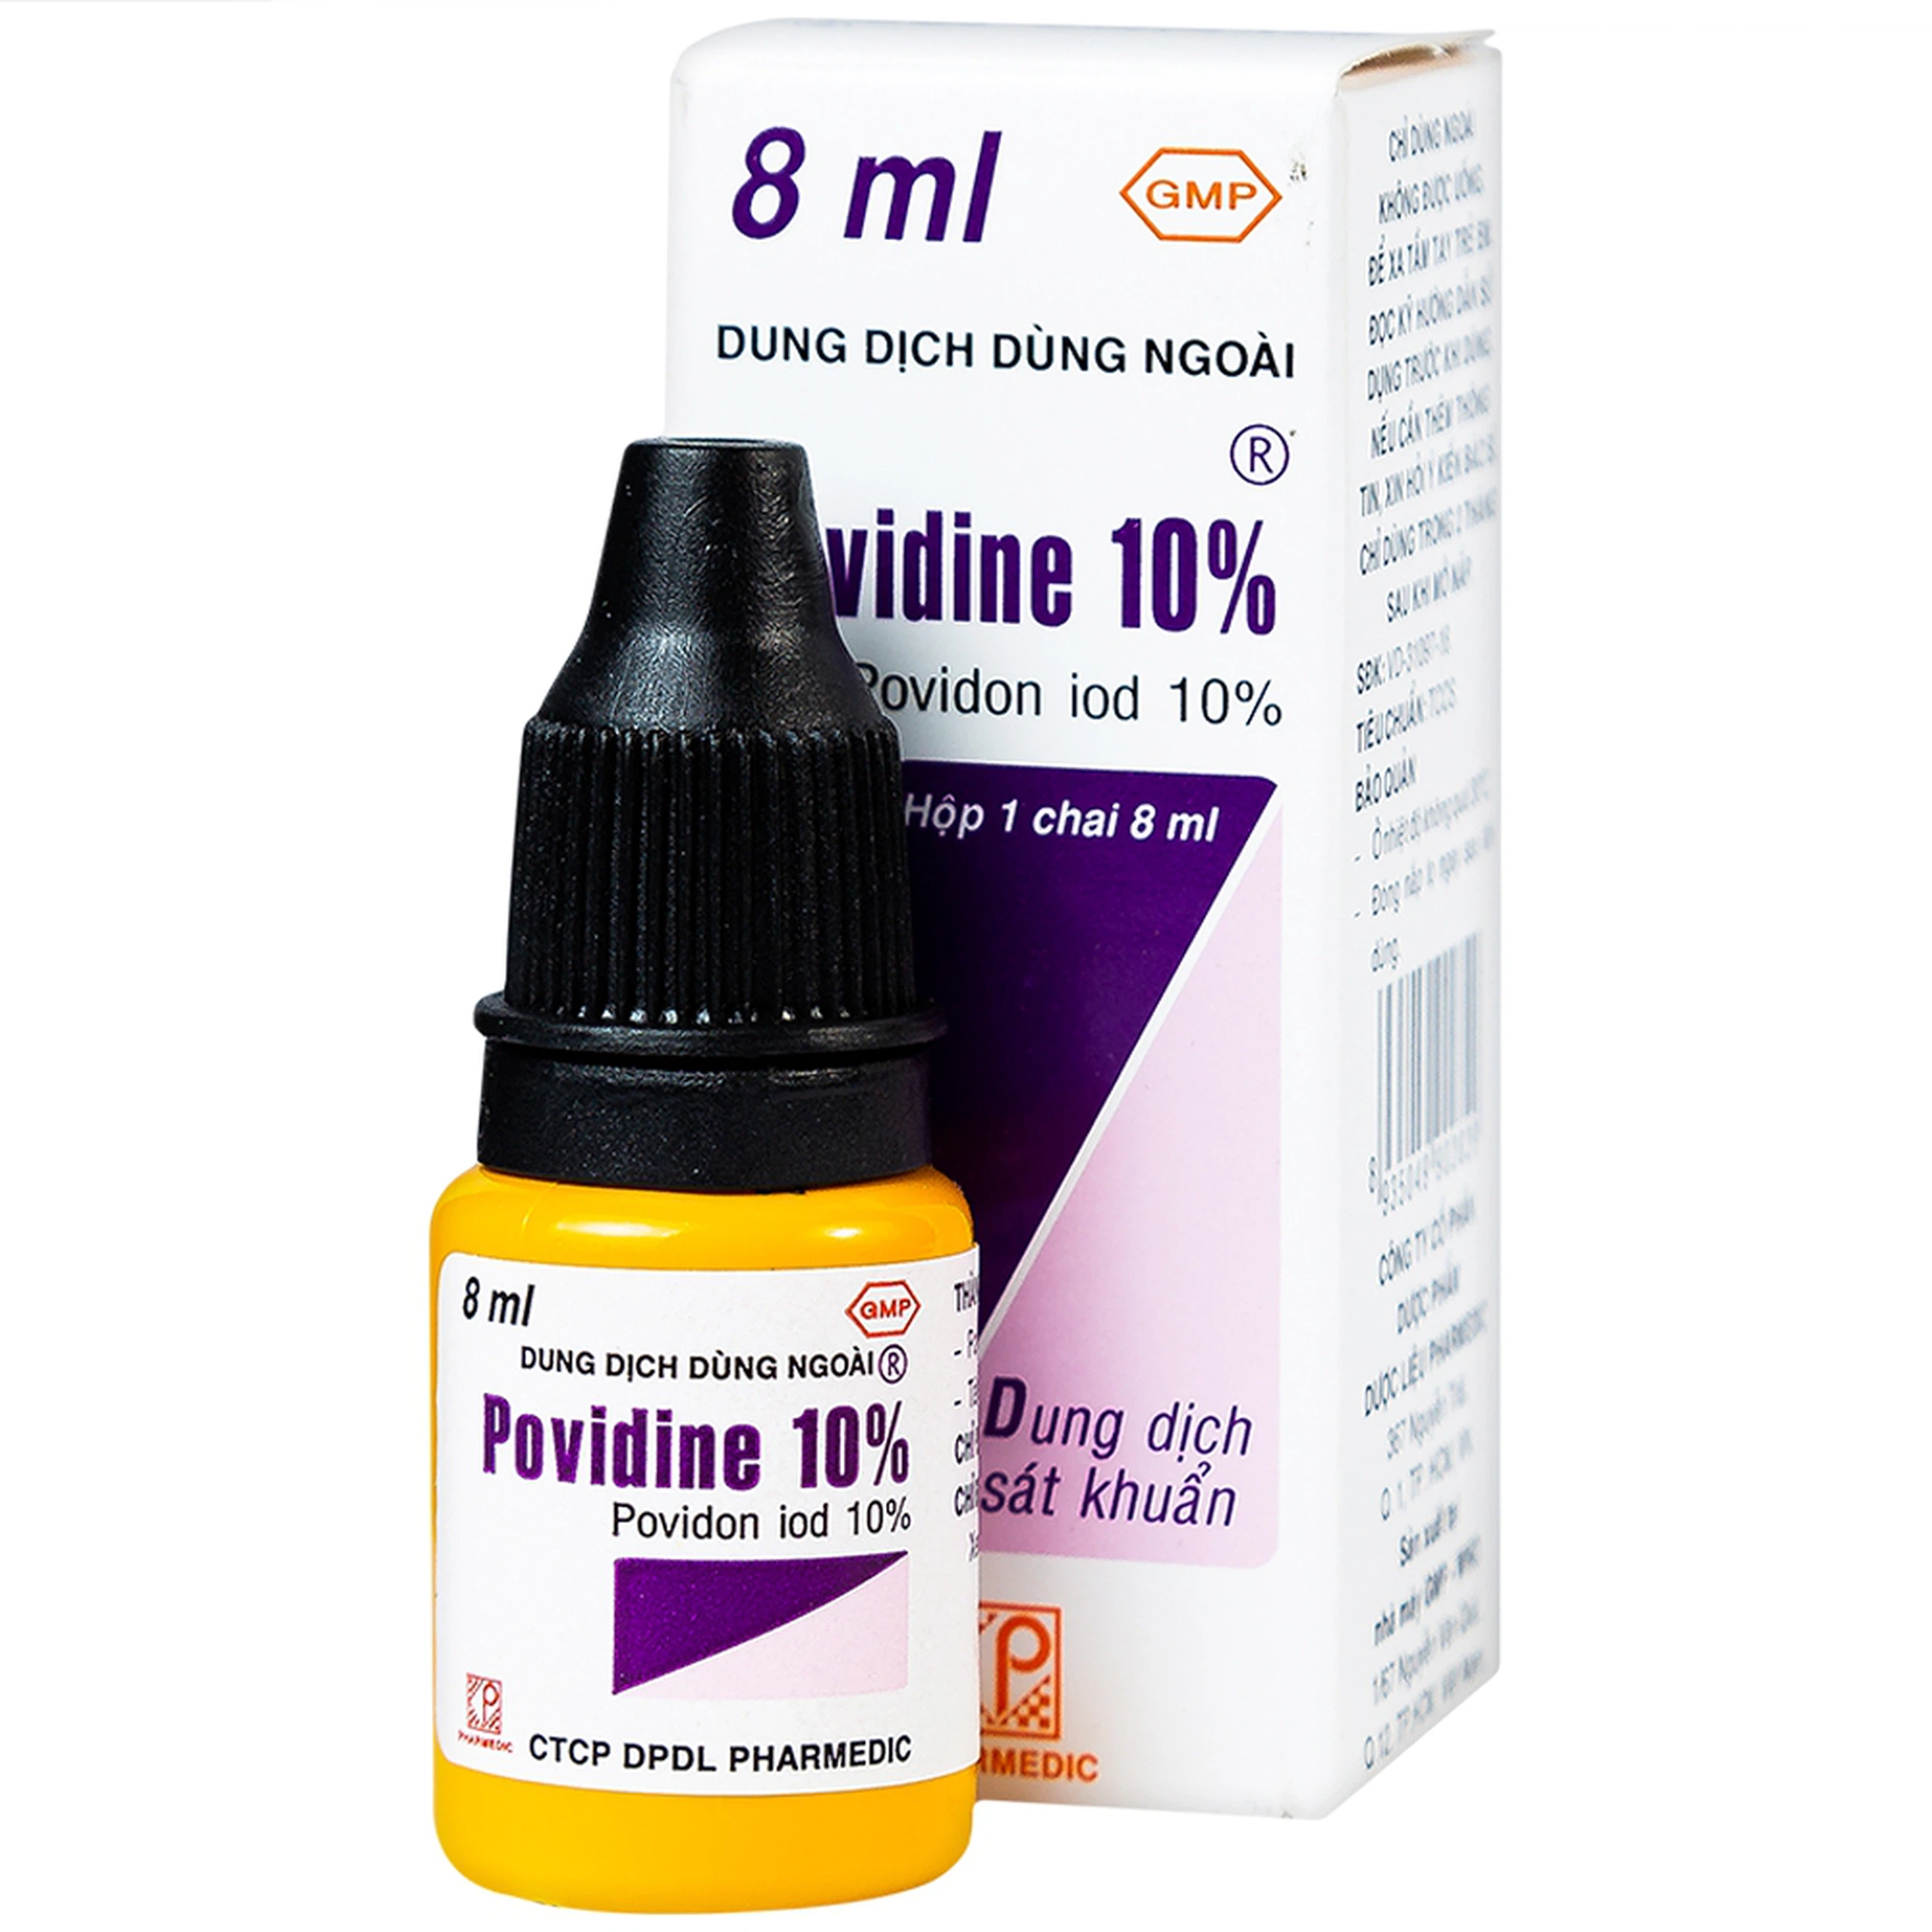 Dung dịch sát khuẩn Povidine 10% Pharmedic ngăn ngừa nhiễm khuẩn ở vết cắt, vết trầy (8ml)